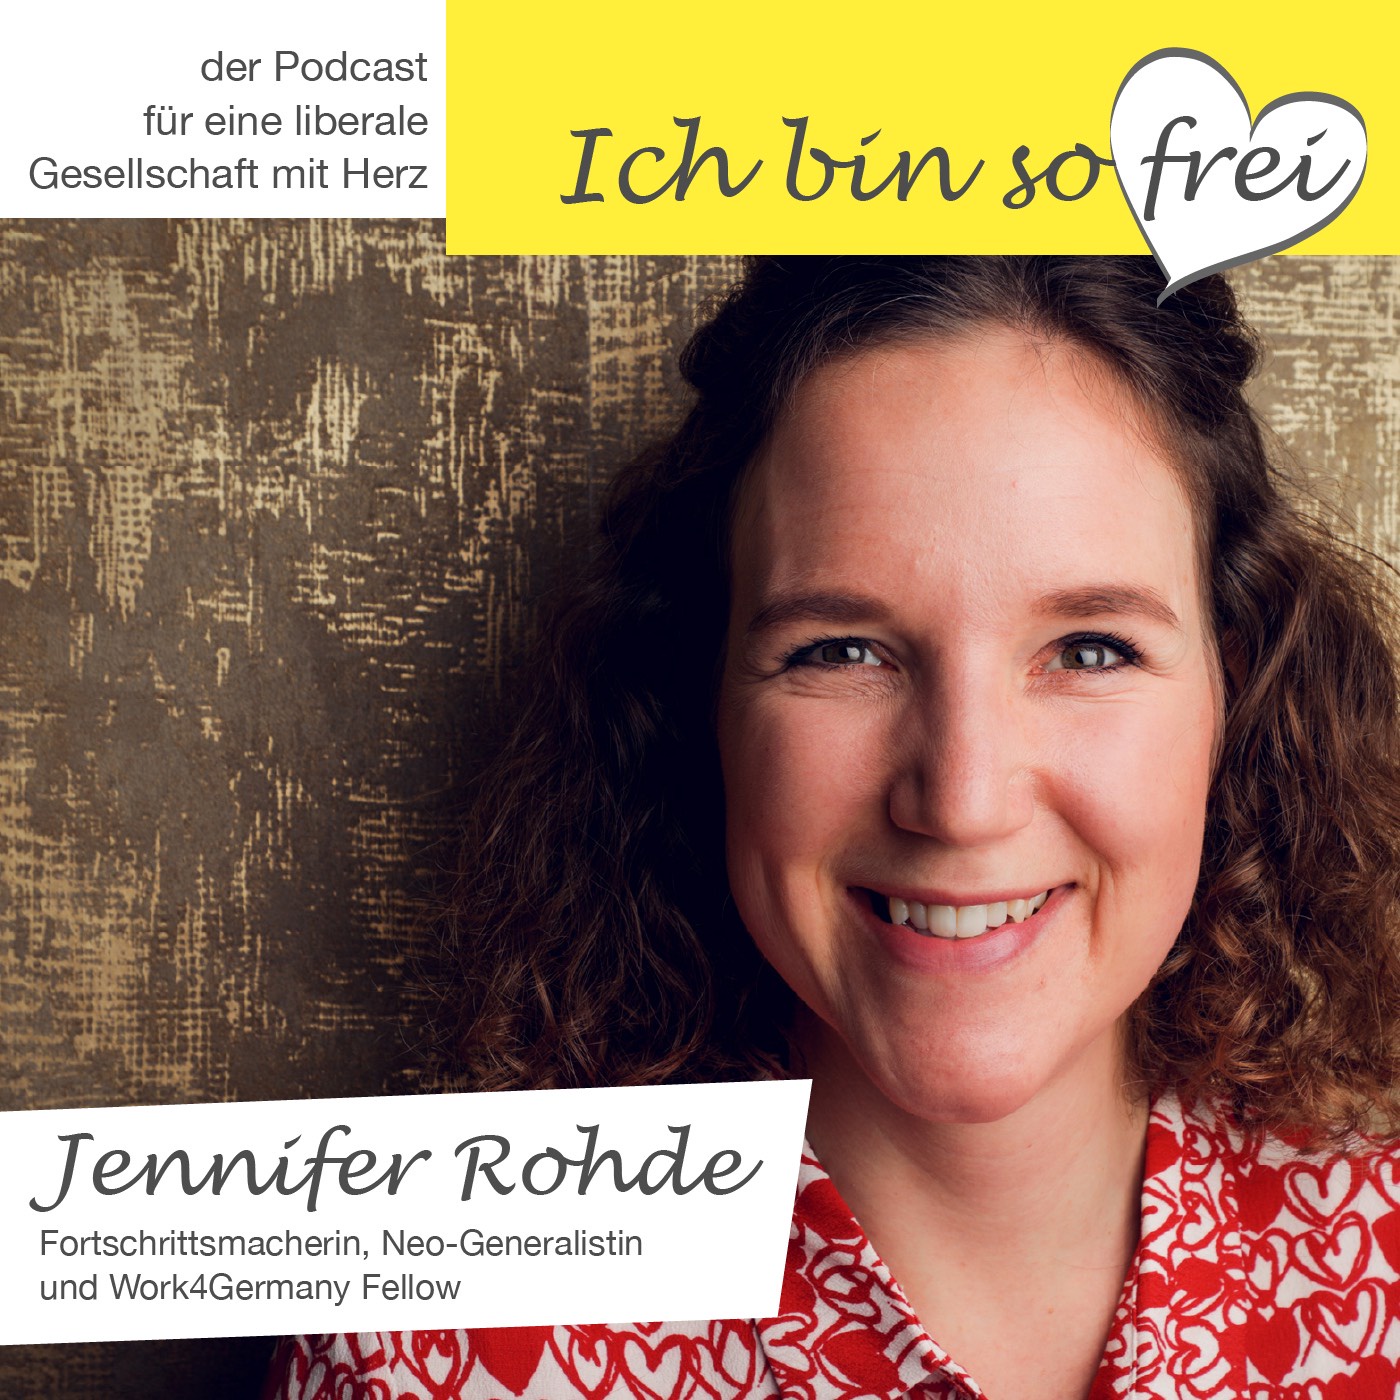 #10 Jennifer Rohde über Zukunftskompetenzen, Fortschritt als Lebensmotto und grüne Wiesen